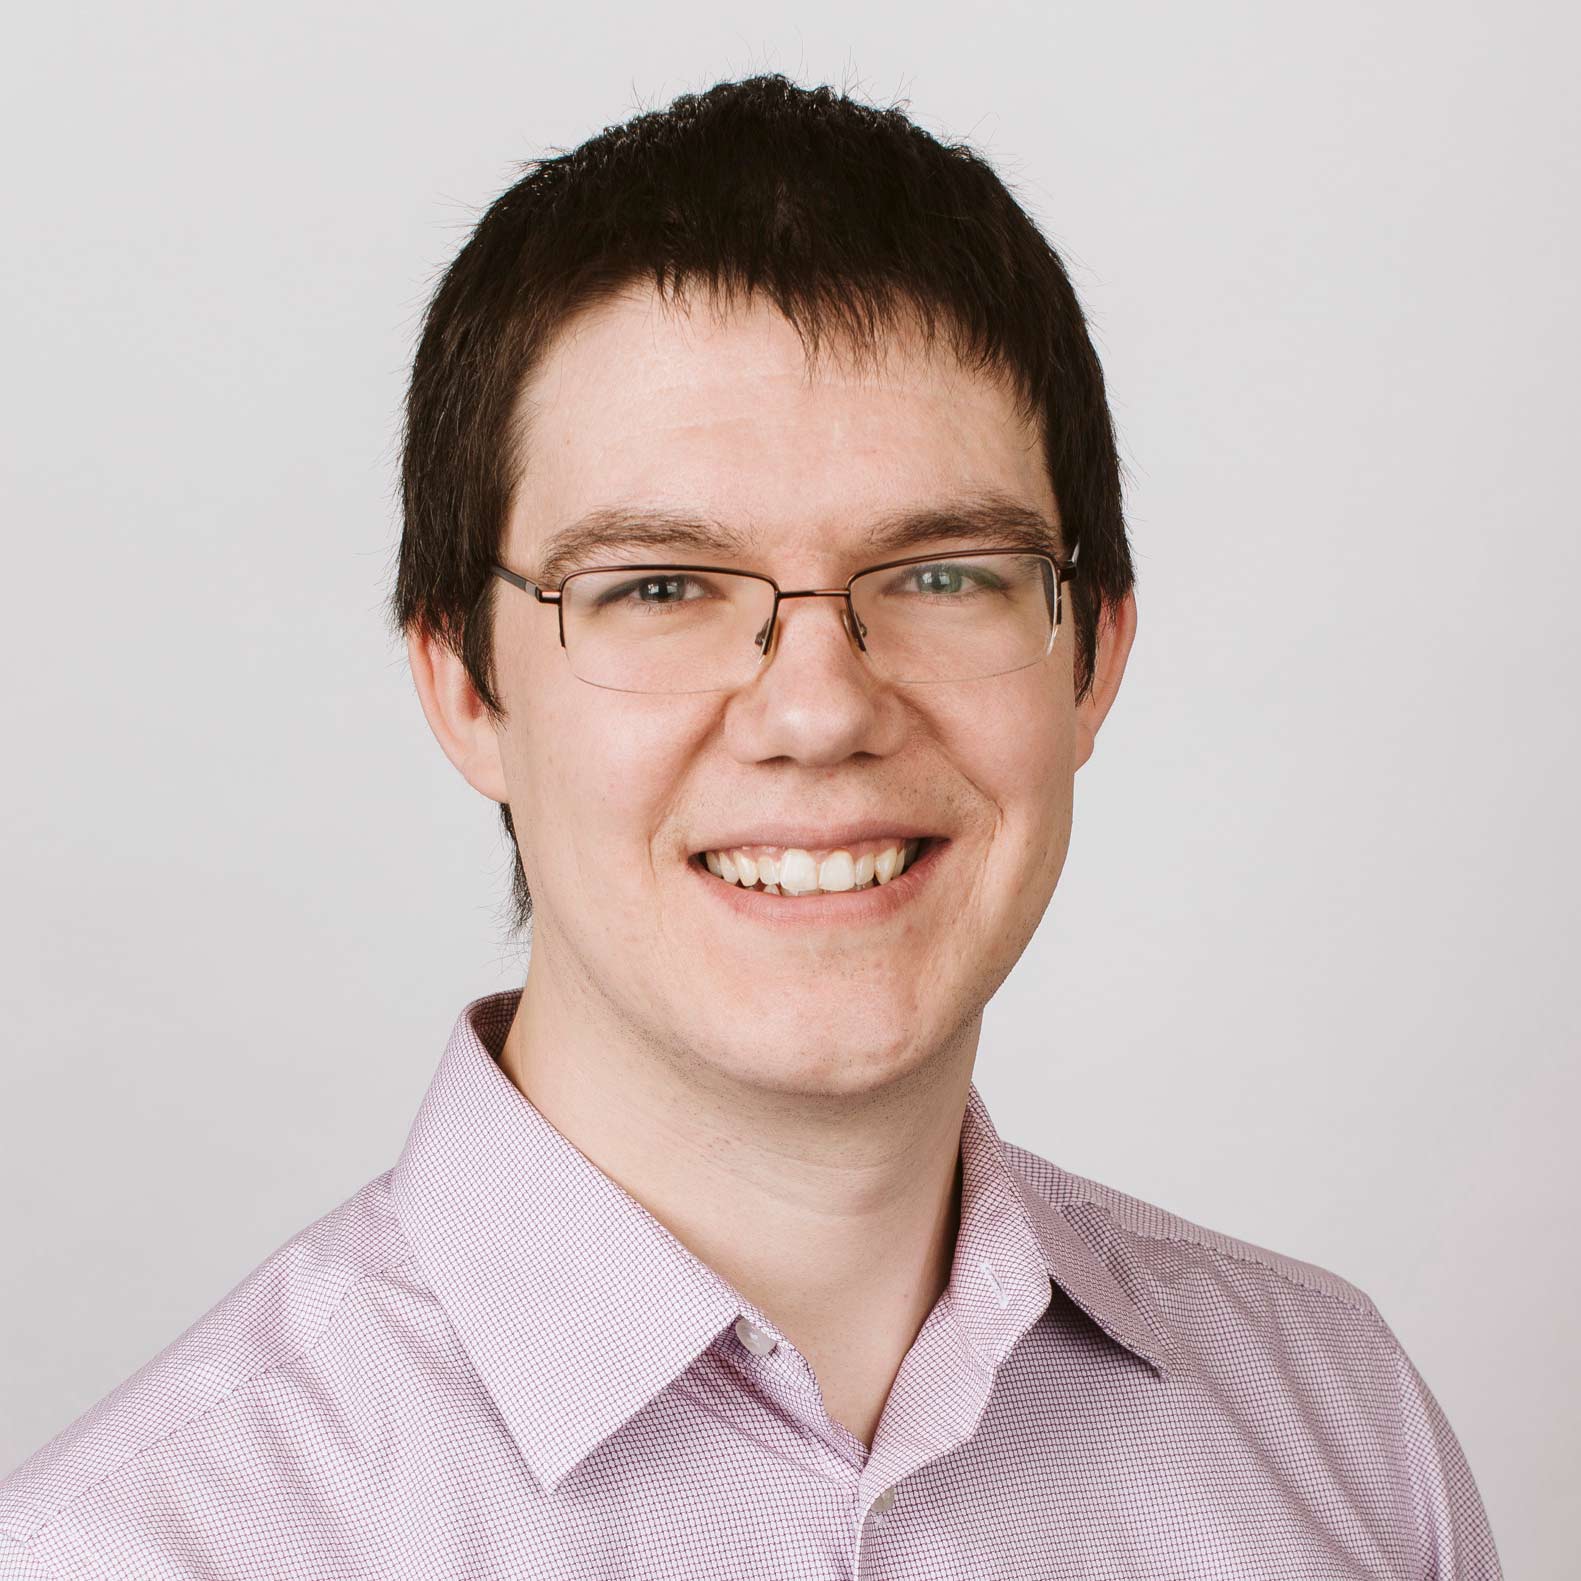 Daniel Bickler - software development architect